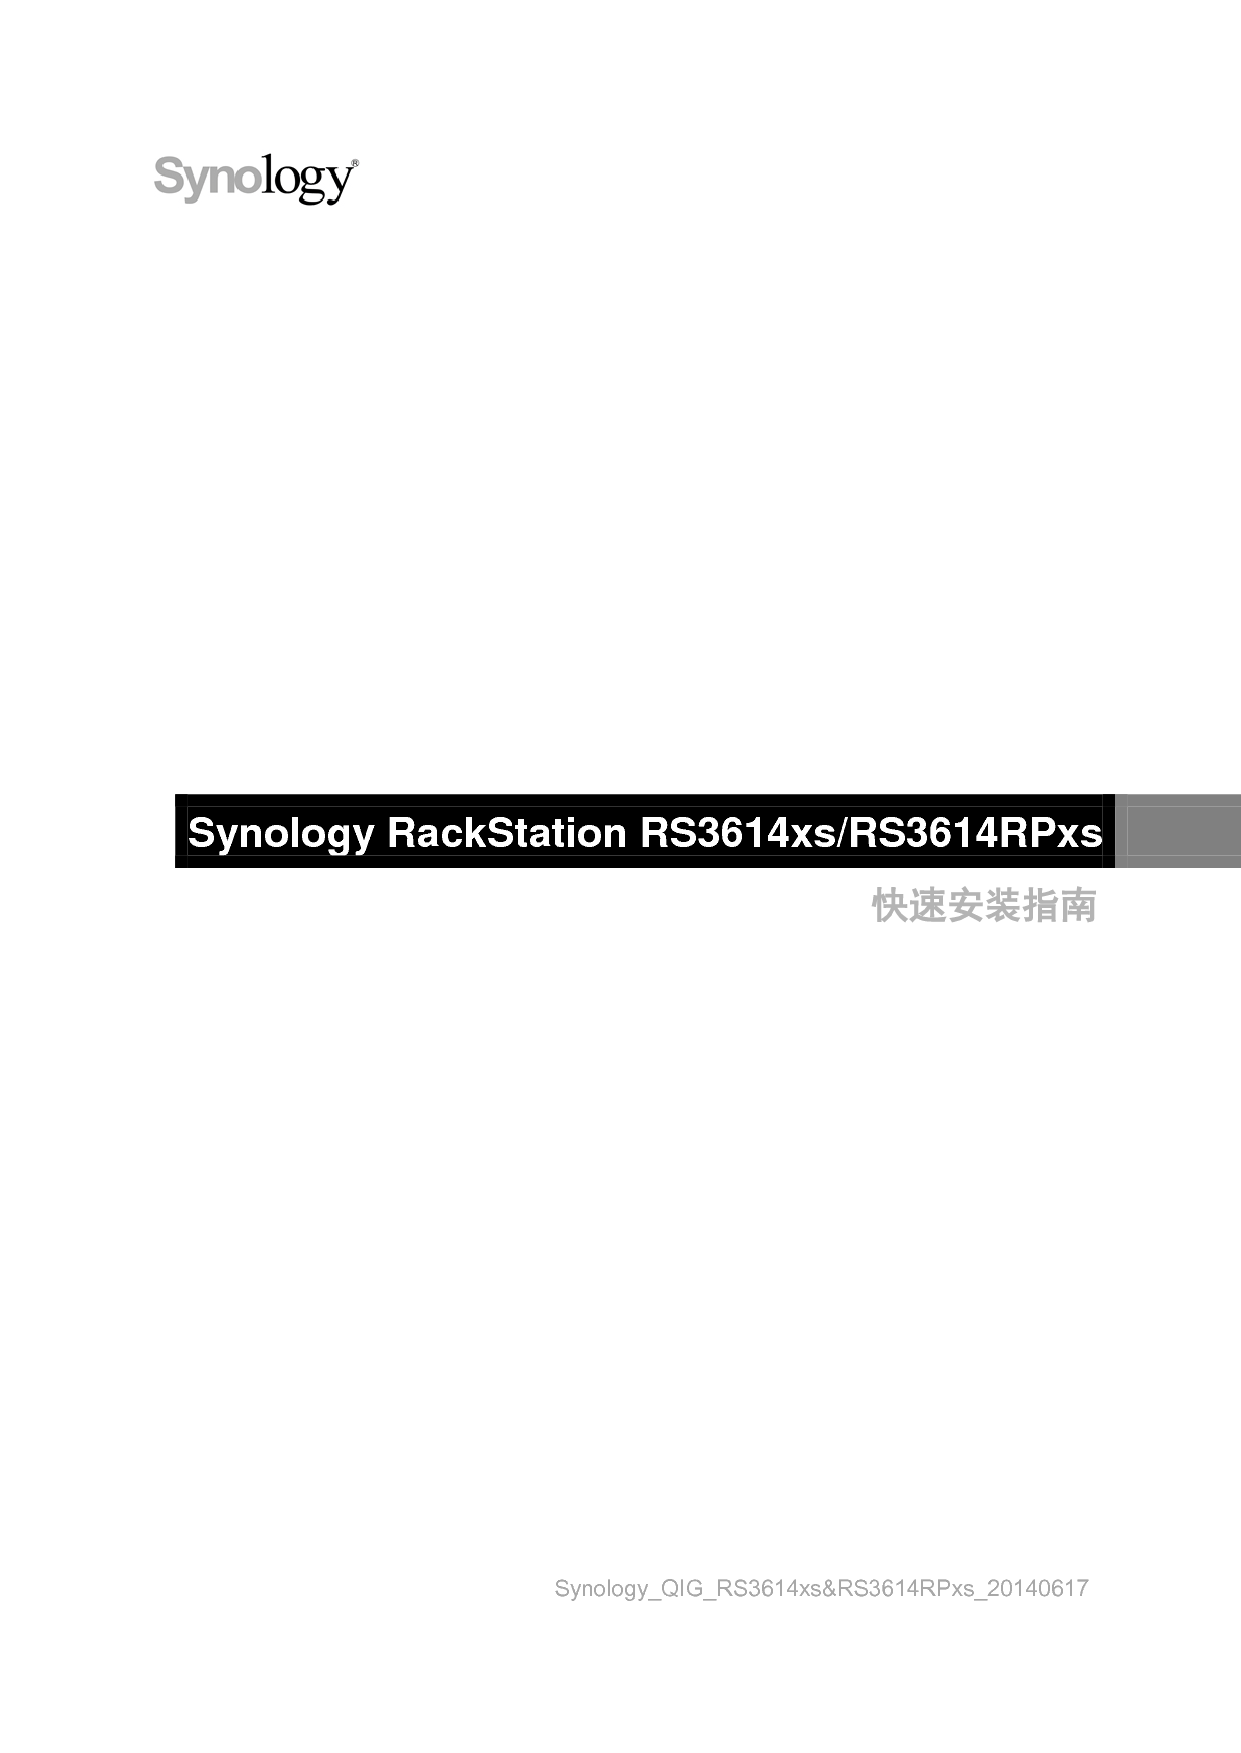 群晖 Synology RS3614RPXS 快速安装指南 封面